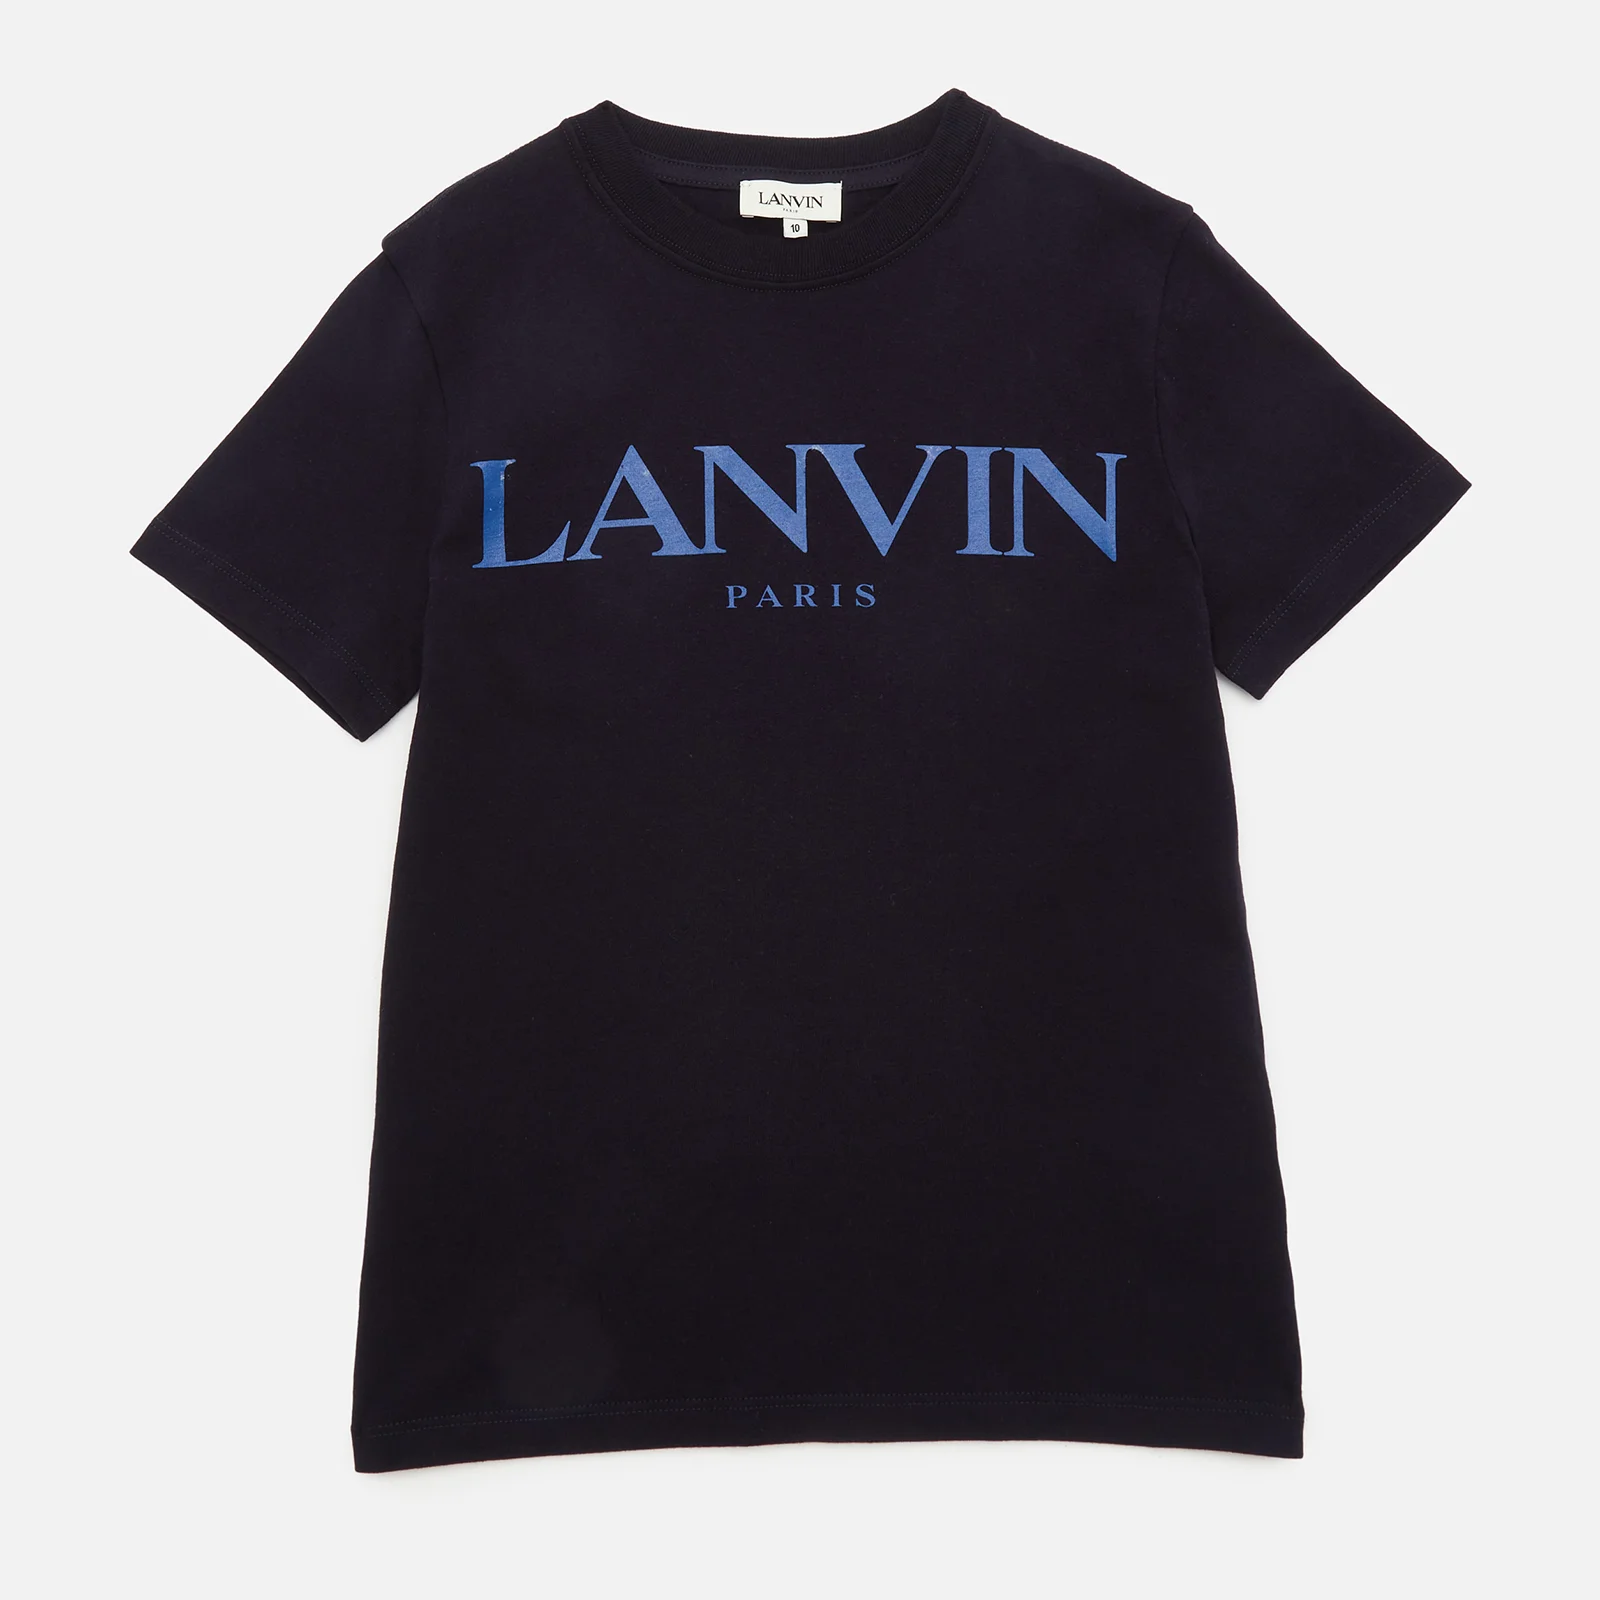 Lanvin Boys' Short Sleeves T-Shirt - Navy Image 1